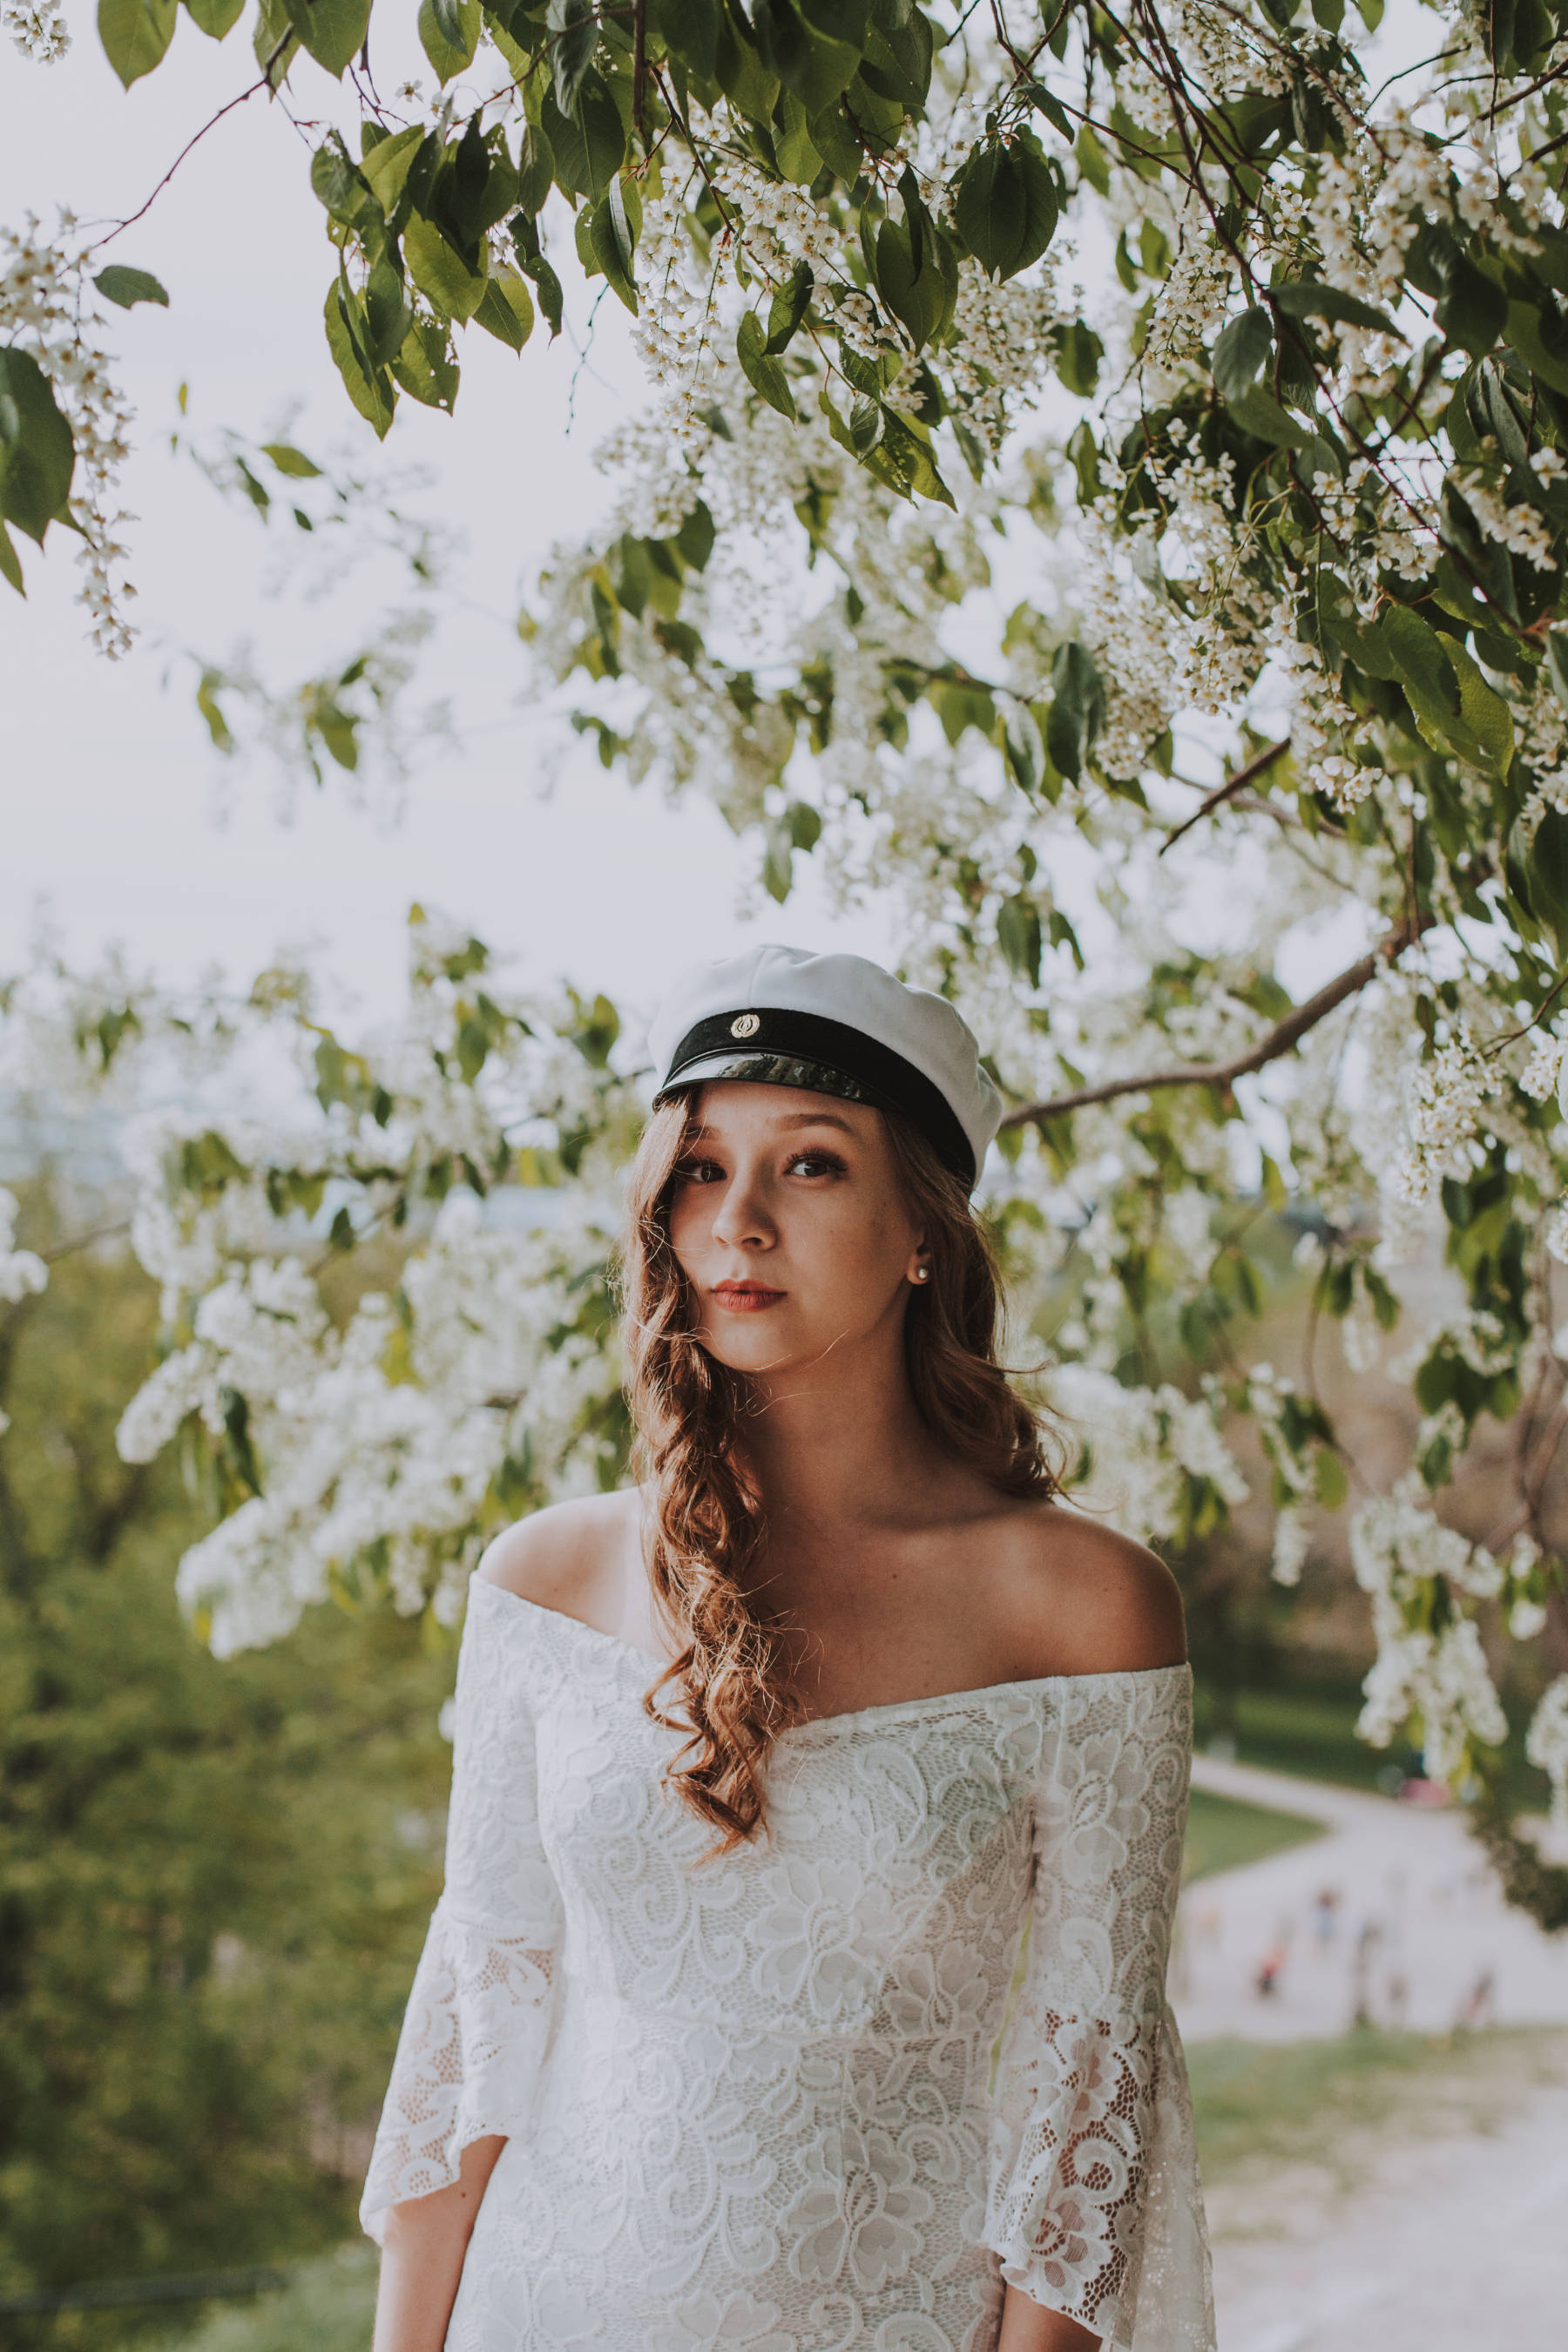 Tytto ylioppilaskuvauksessa Kaivopuistossa Helsingissa kesalla valkoinen mekko paalla